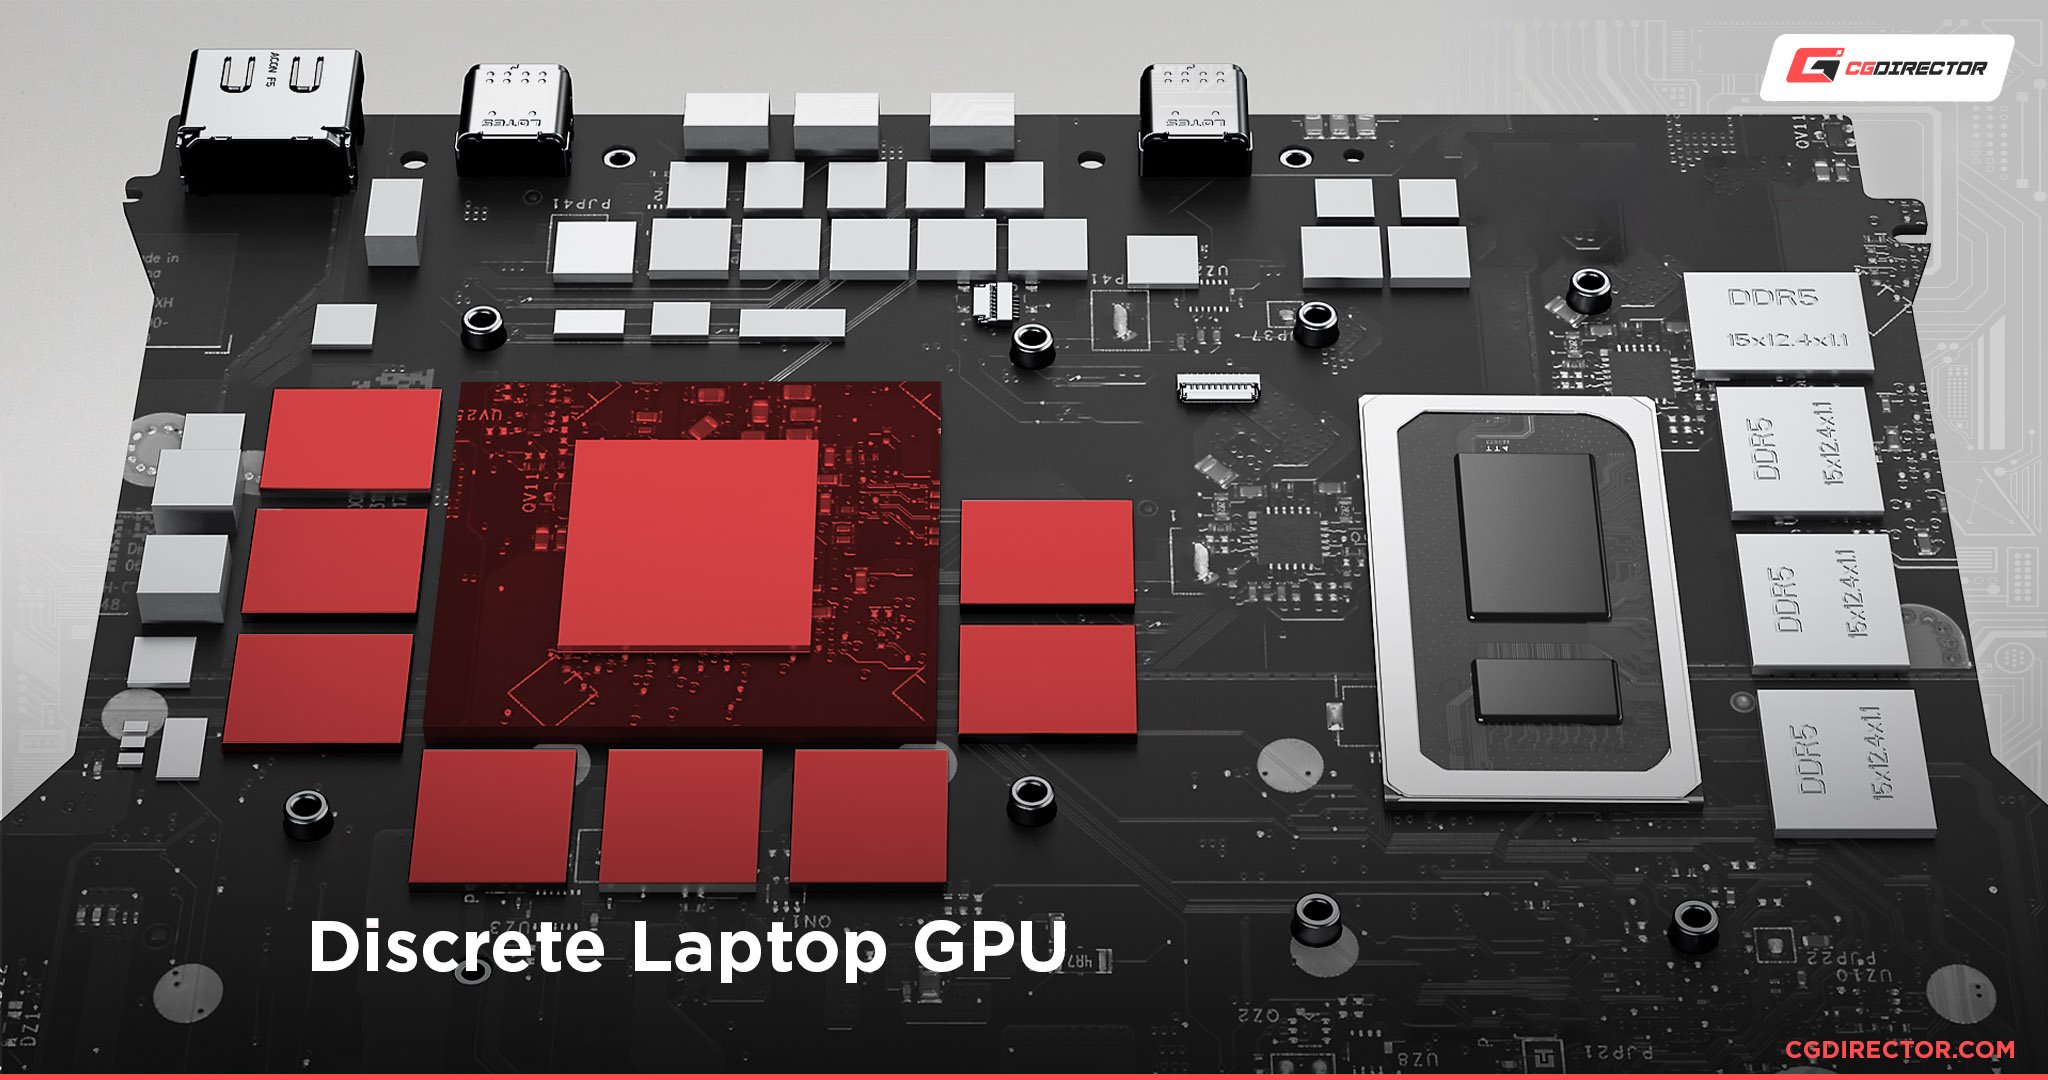 Discrete Laptop GPU